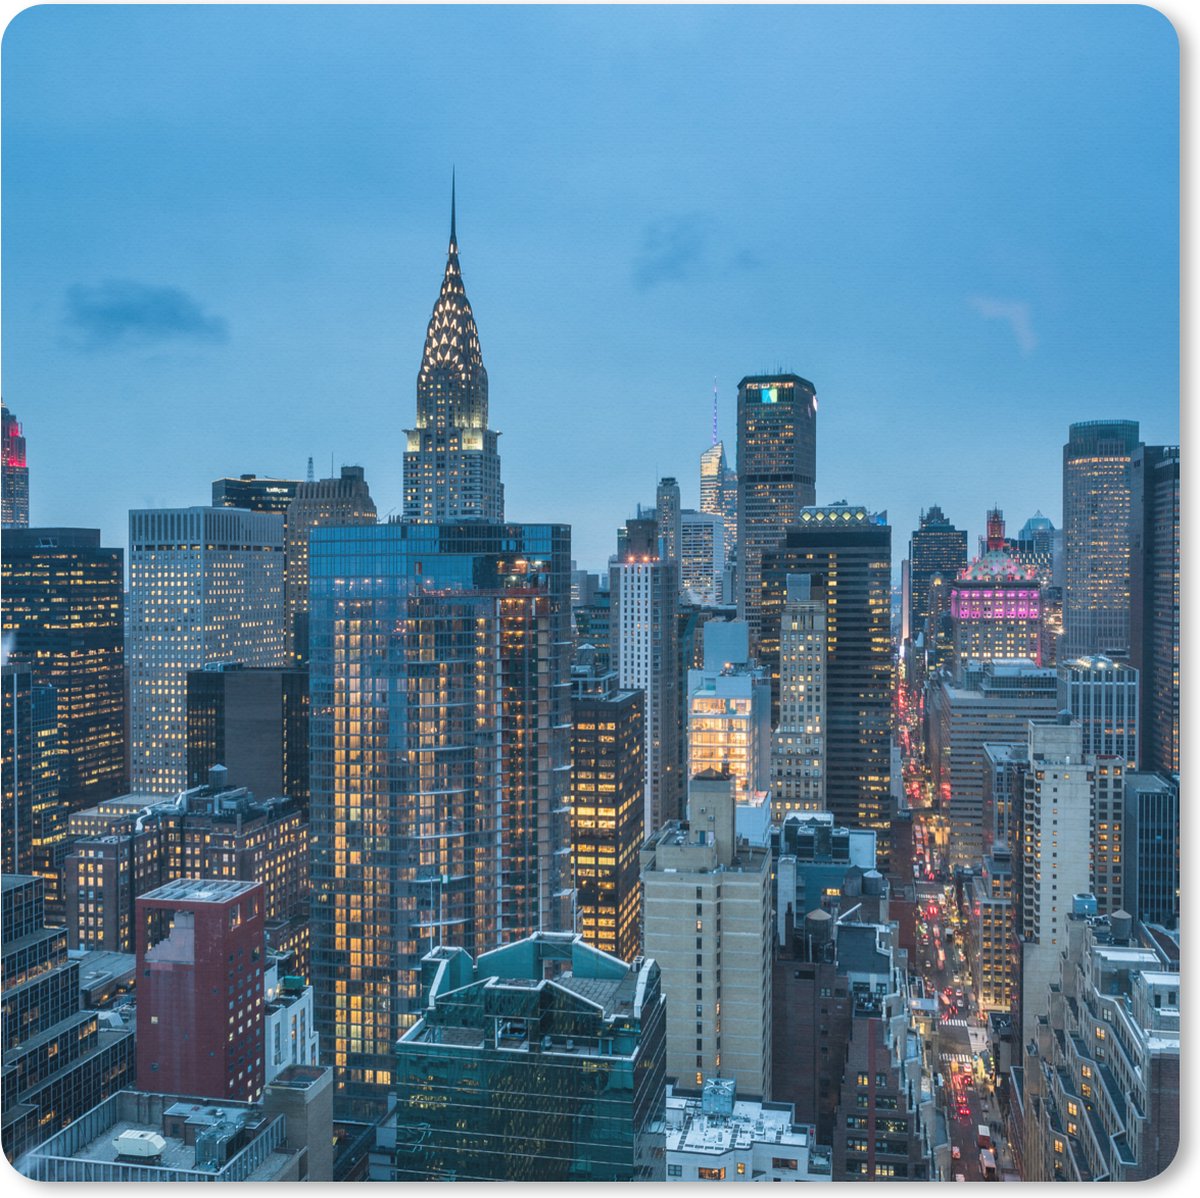 Muismat XXL - Bureau onderlegger - Bureau mat - New York - Skyline - Empire State Building - 80x80 cm - XXL muismat